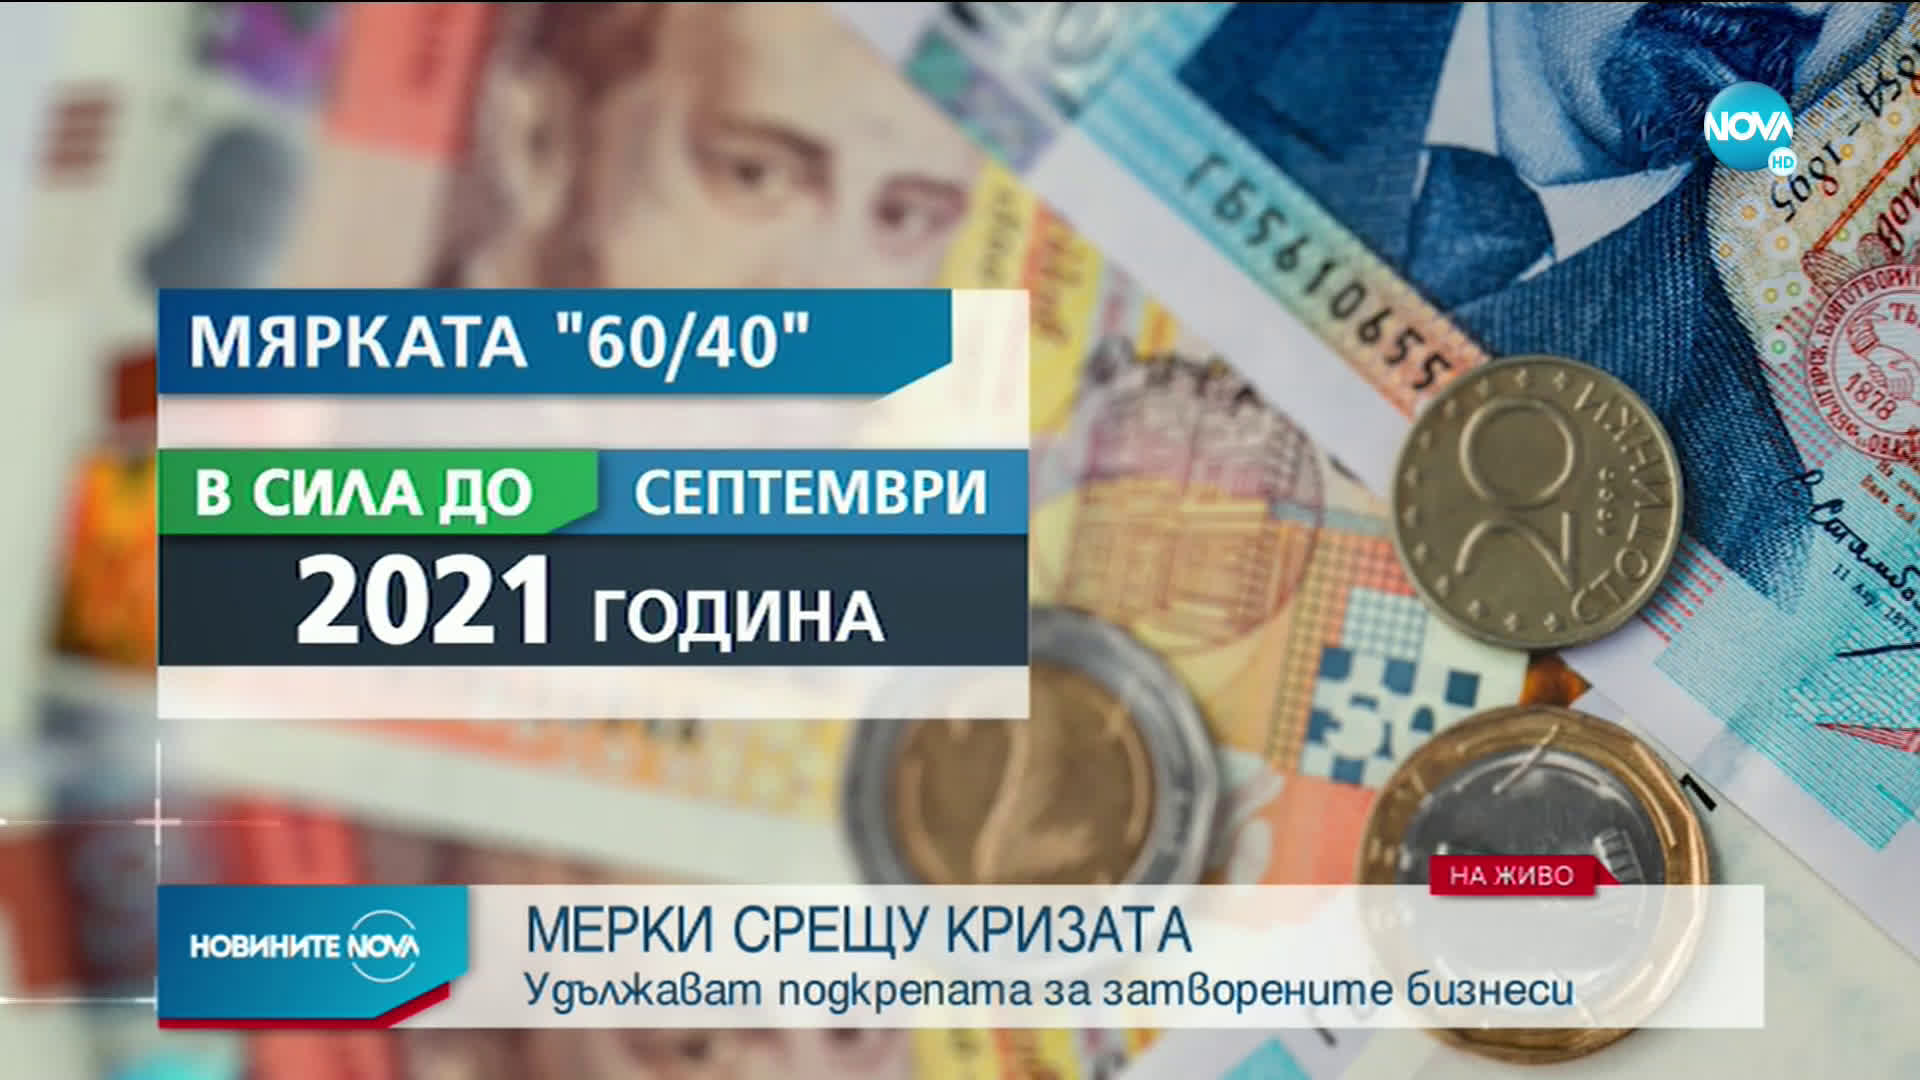 Борисов: Удължаваме мярката 60/40 до септември 2021 г.